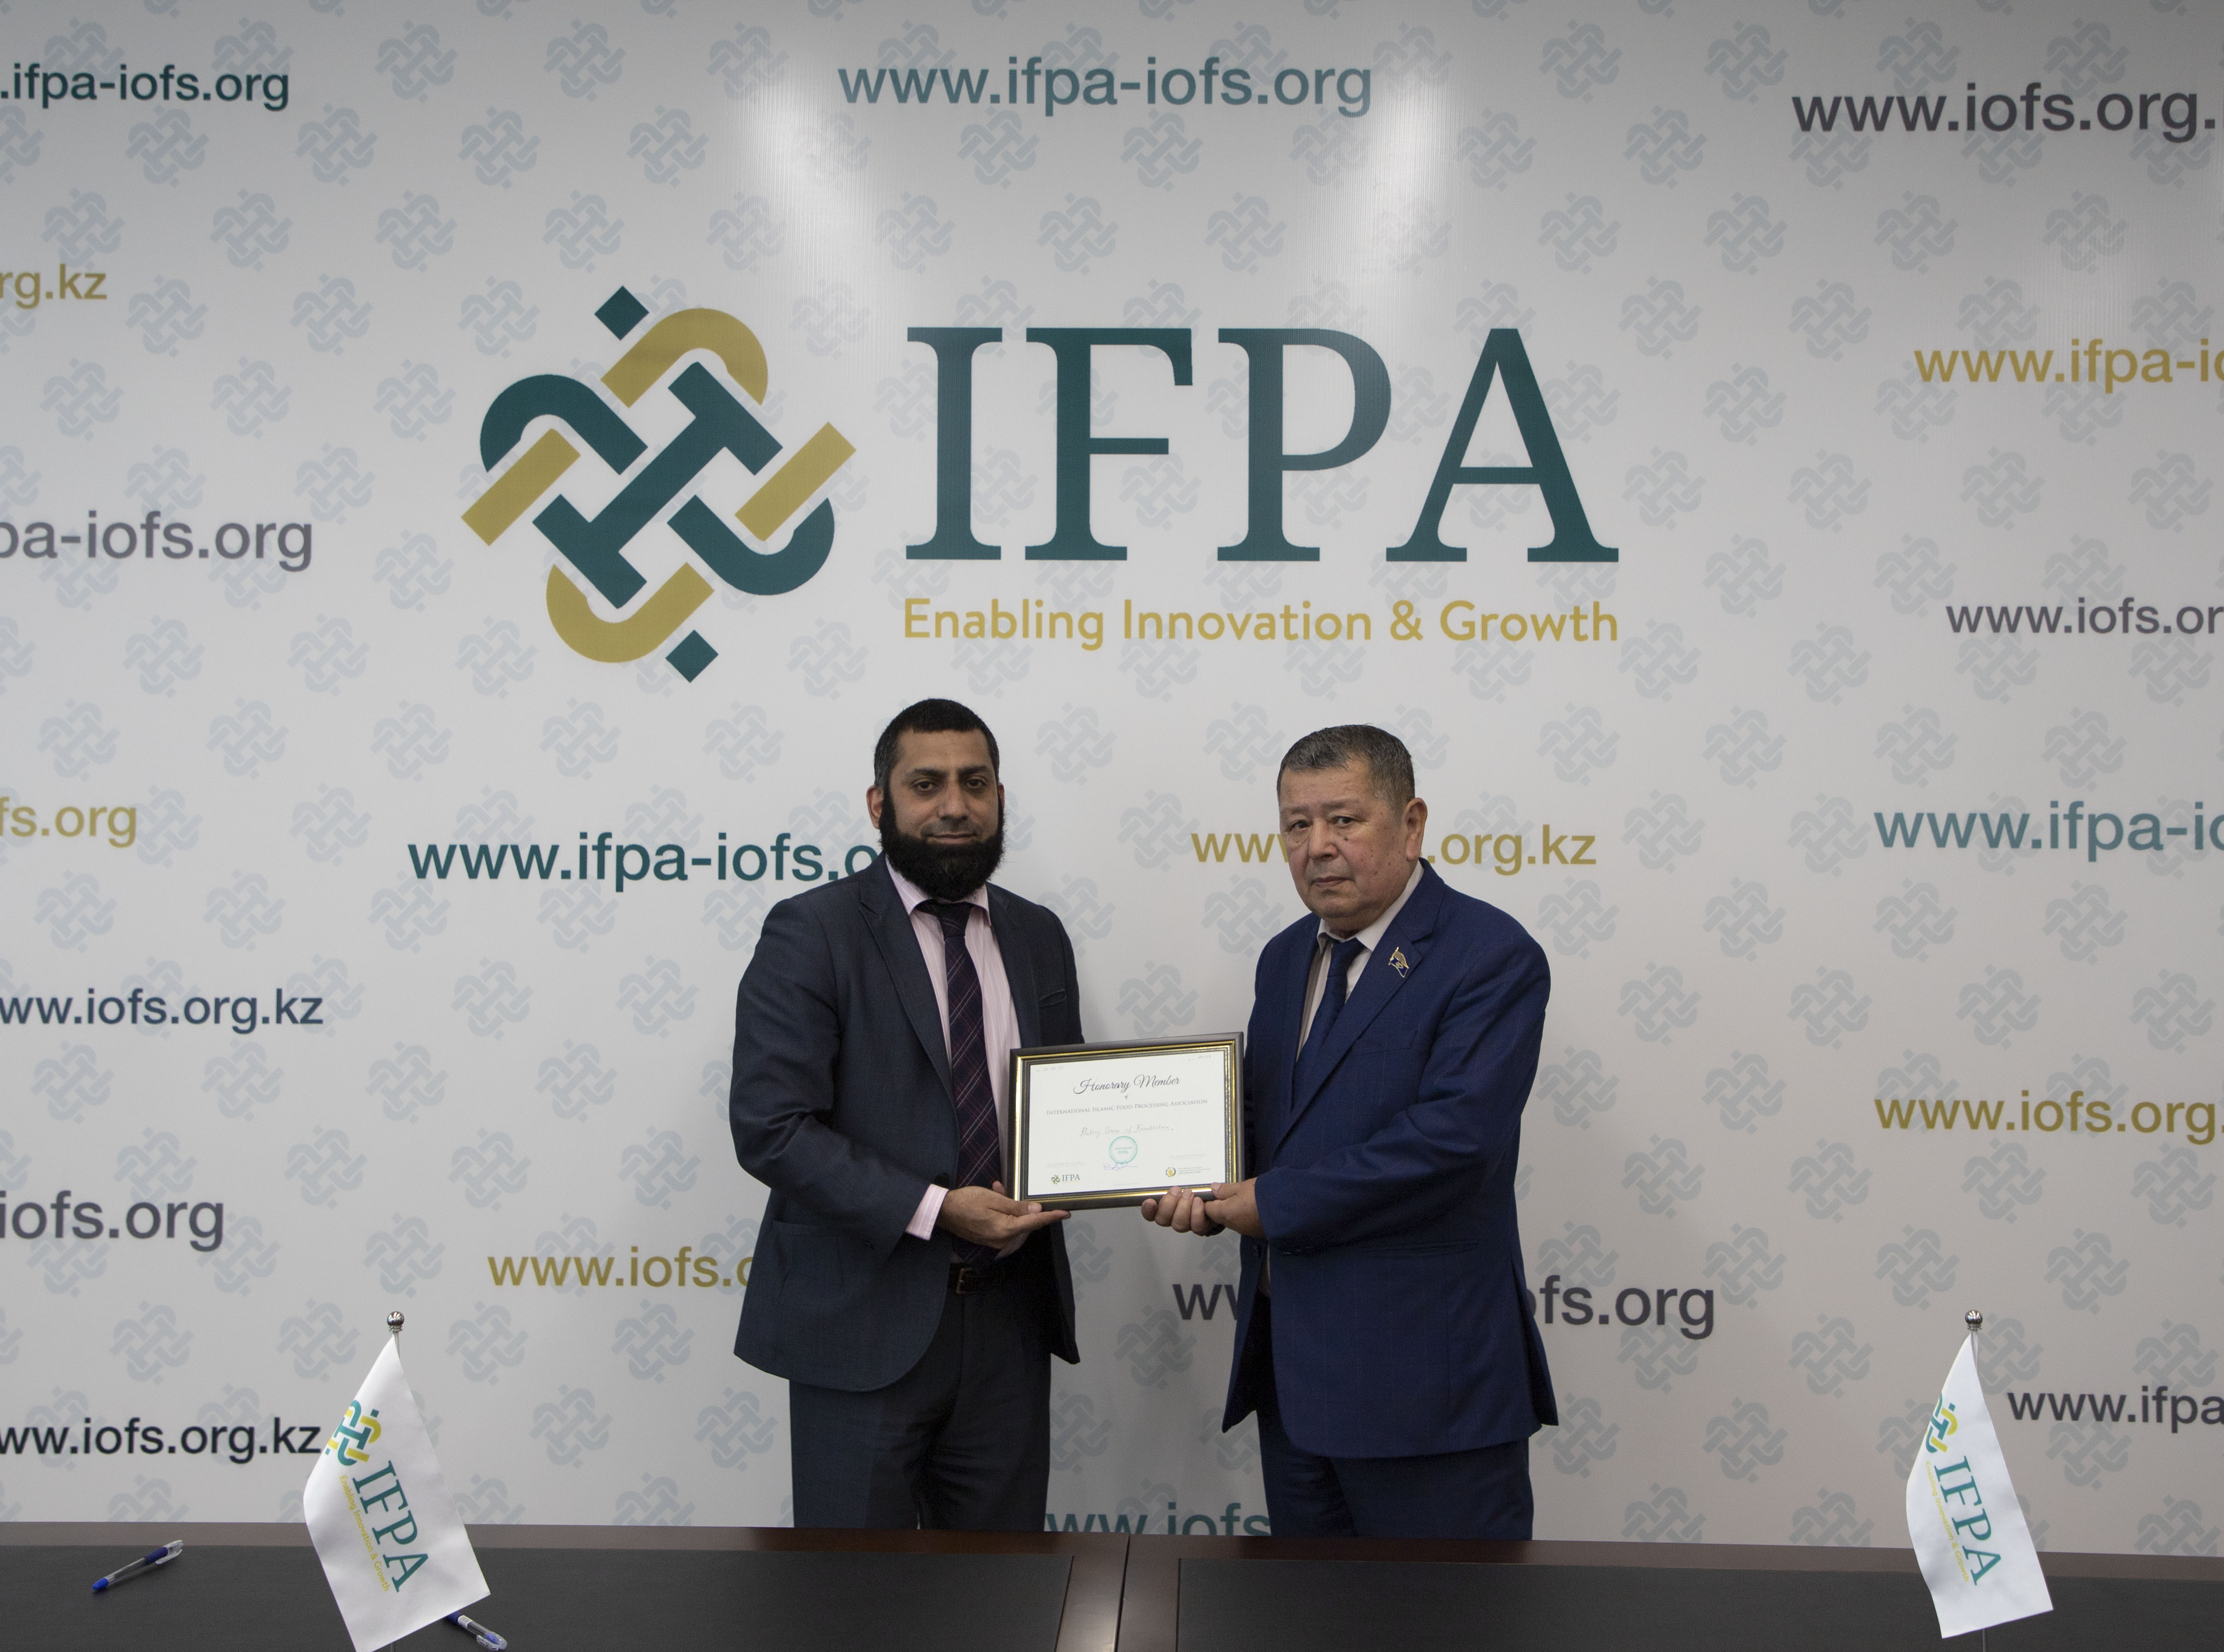 Подписание Соглашения о членстве между Некоммерческой организацией International IFPA и ОЮФЛ "Союз птицеводов Казахстана"